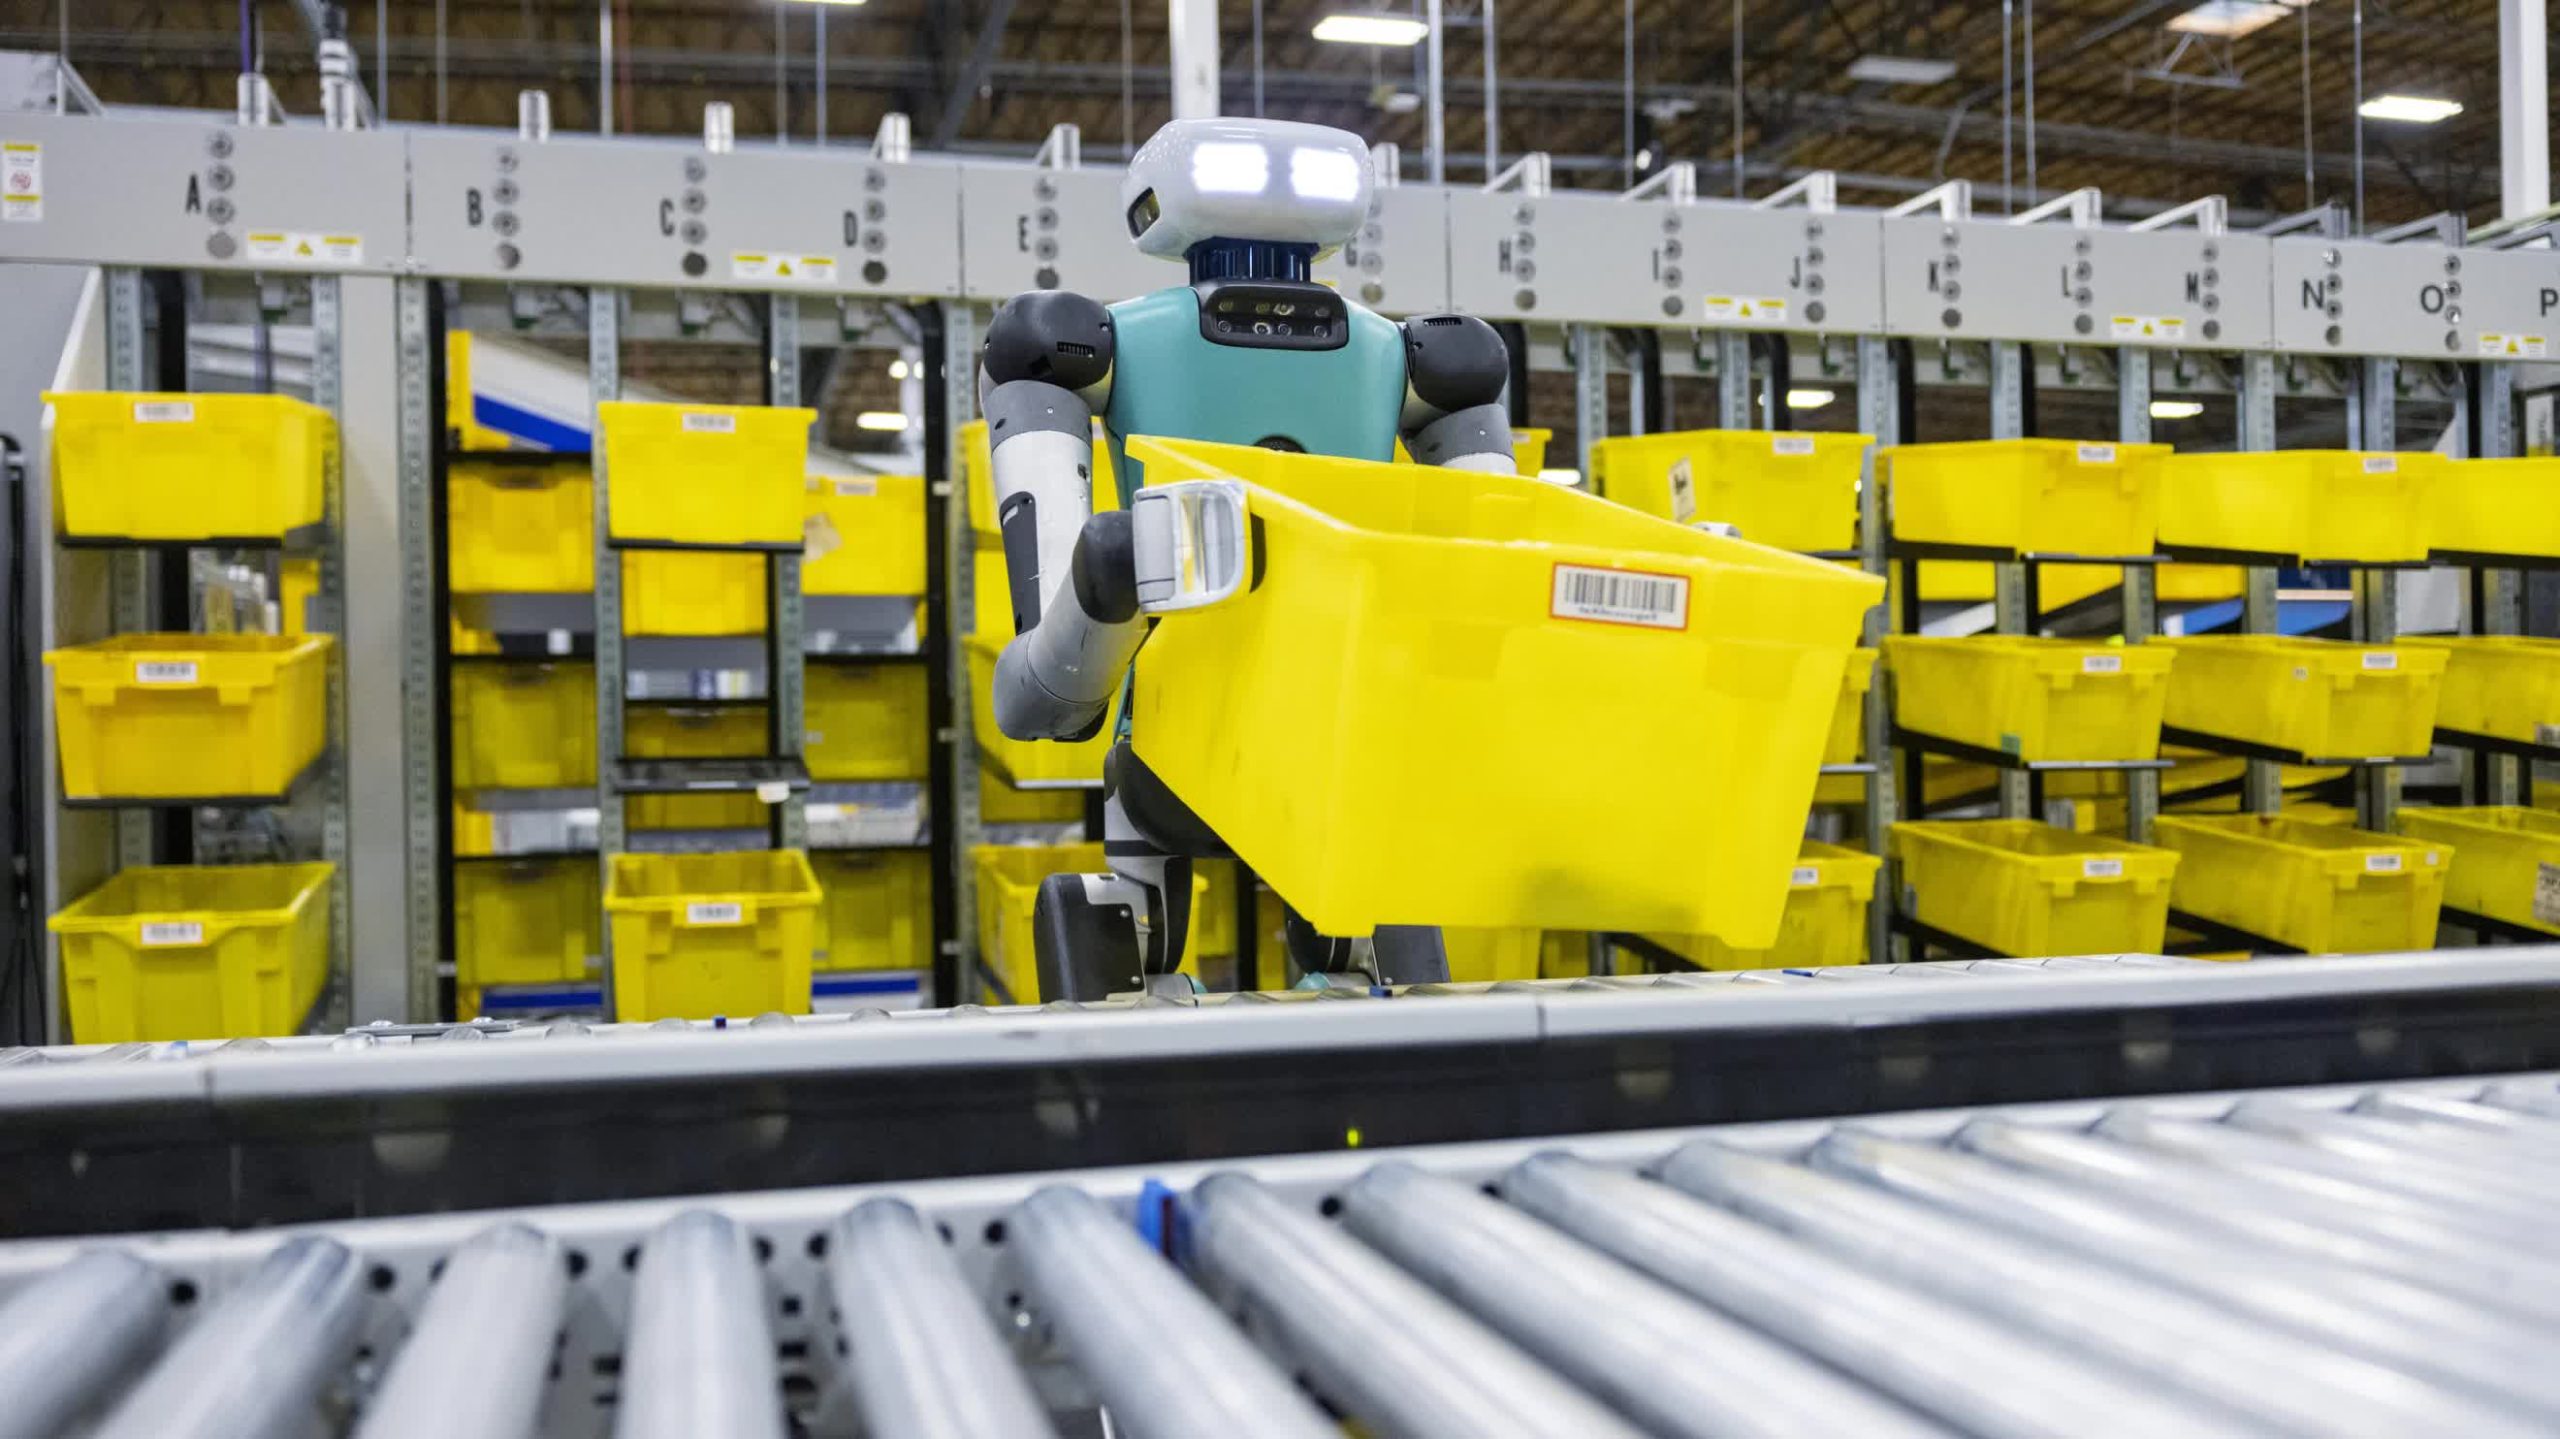 Un ejecutivo de Amazon afirma que los robots y la automatización mejorarán, no reemplazarán, los empleos humanos